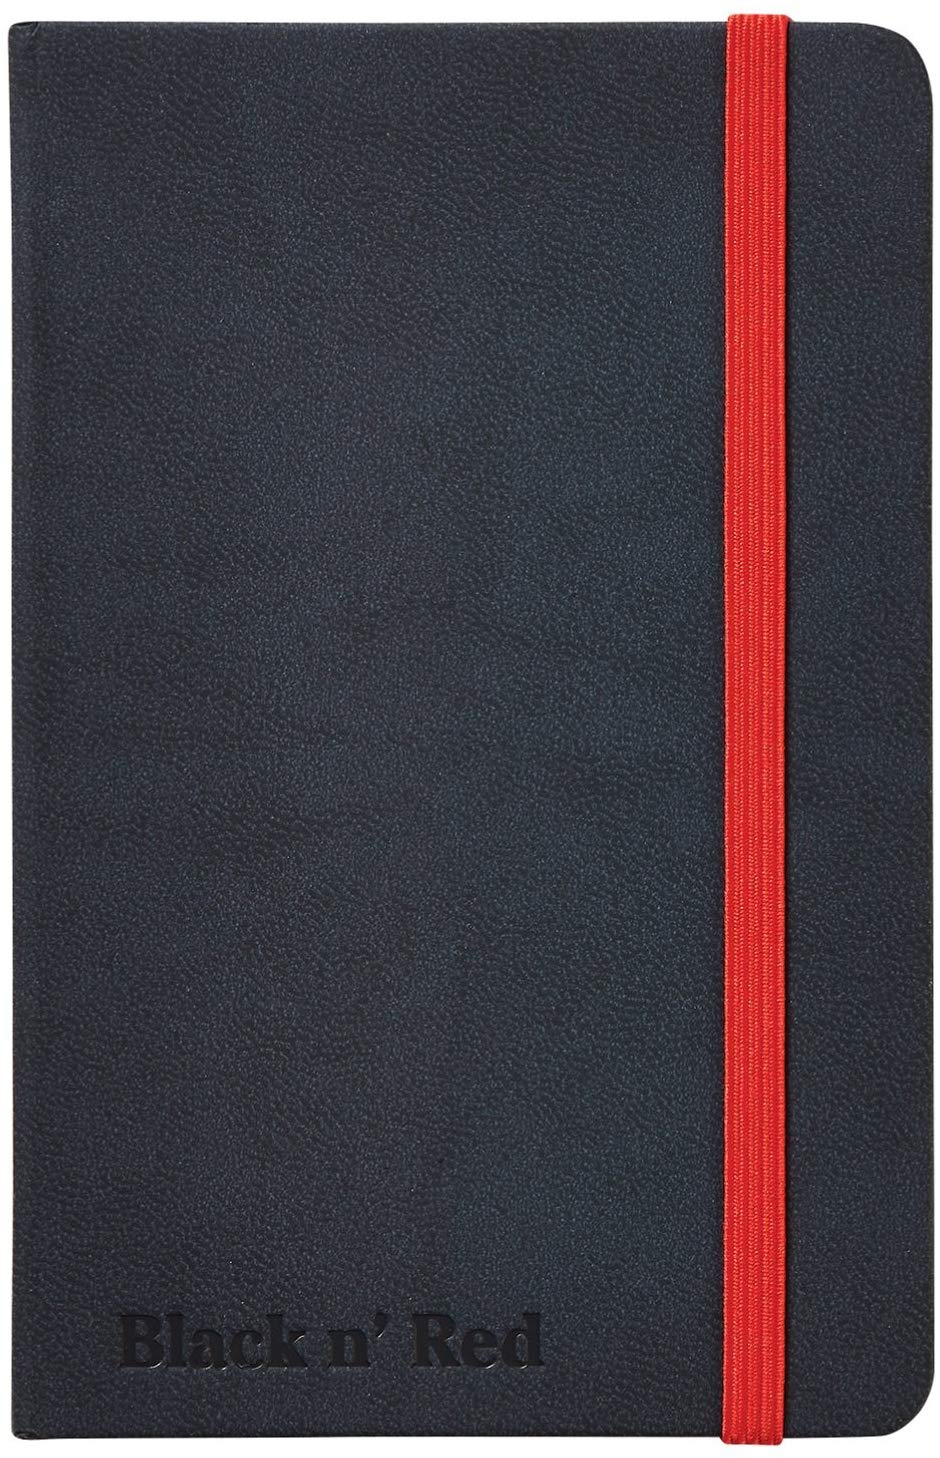 Блокнот в линейку OXFORD Black n Red A5 72 л твердая обложка Oxf-400033673 - фото 1